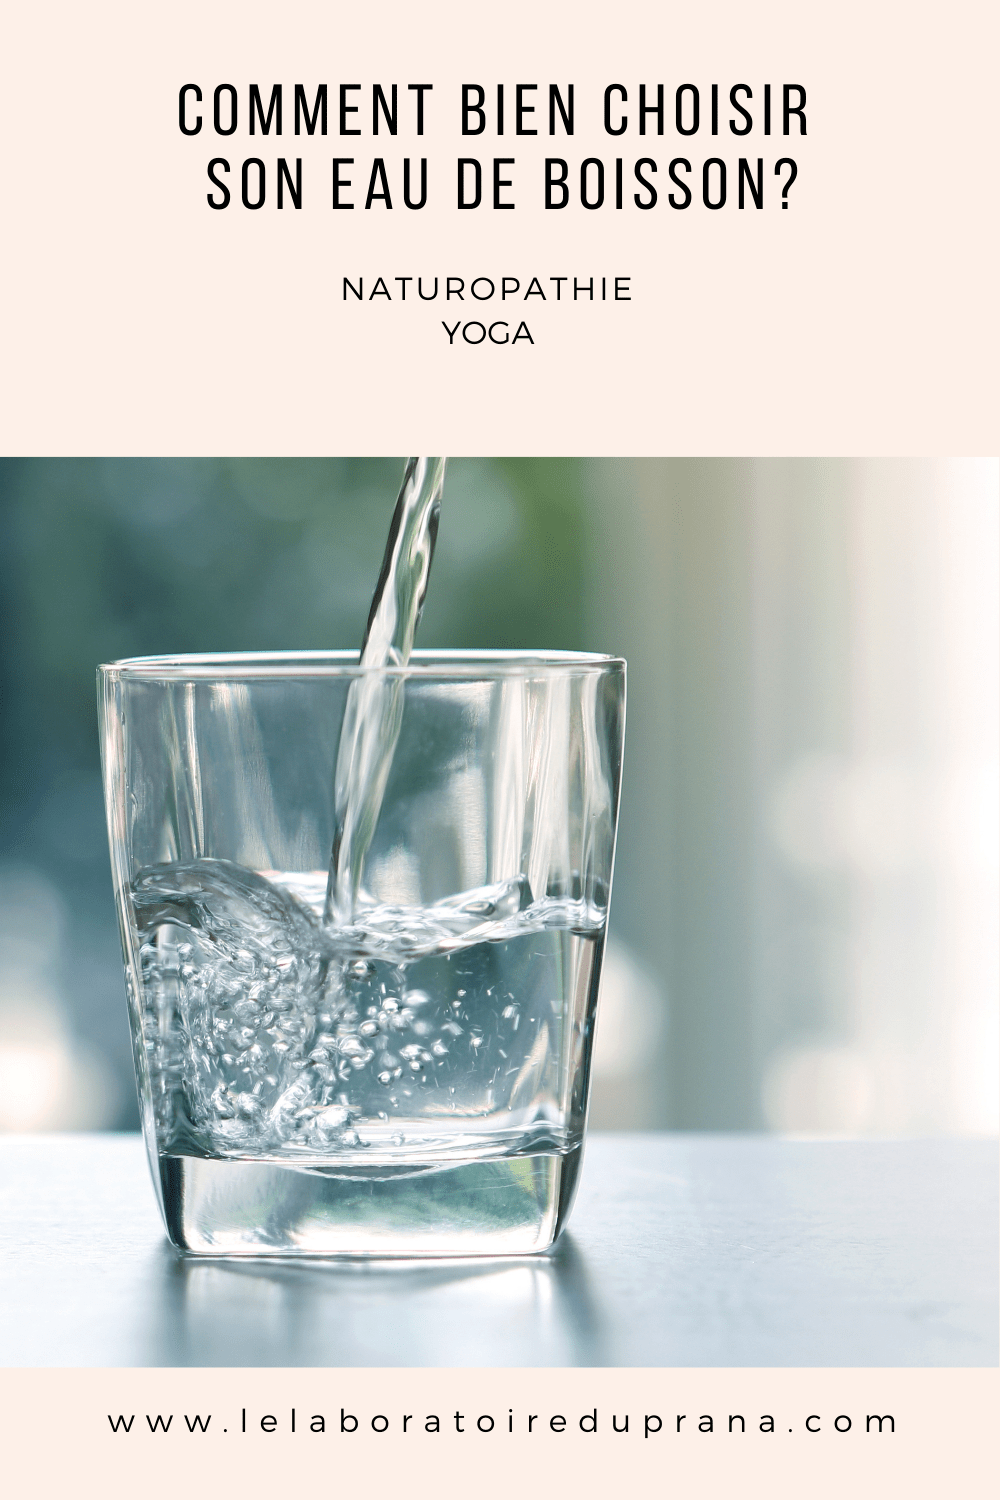 Comment bien choisir son eau de boisson